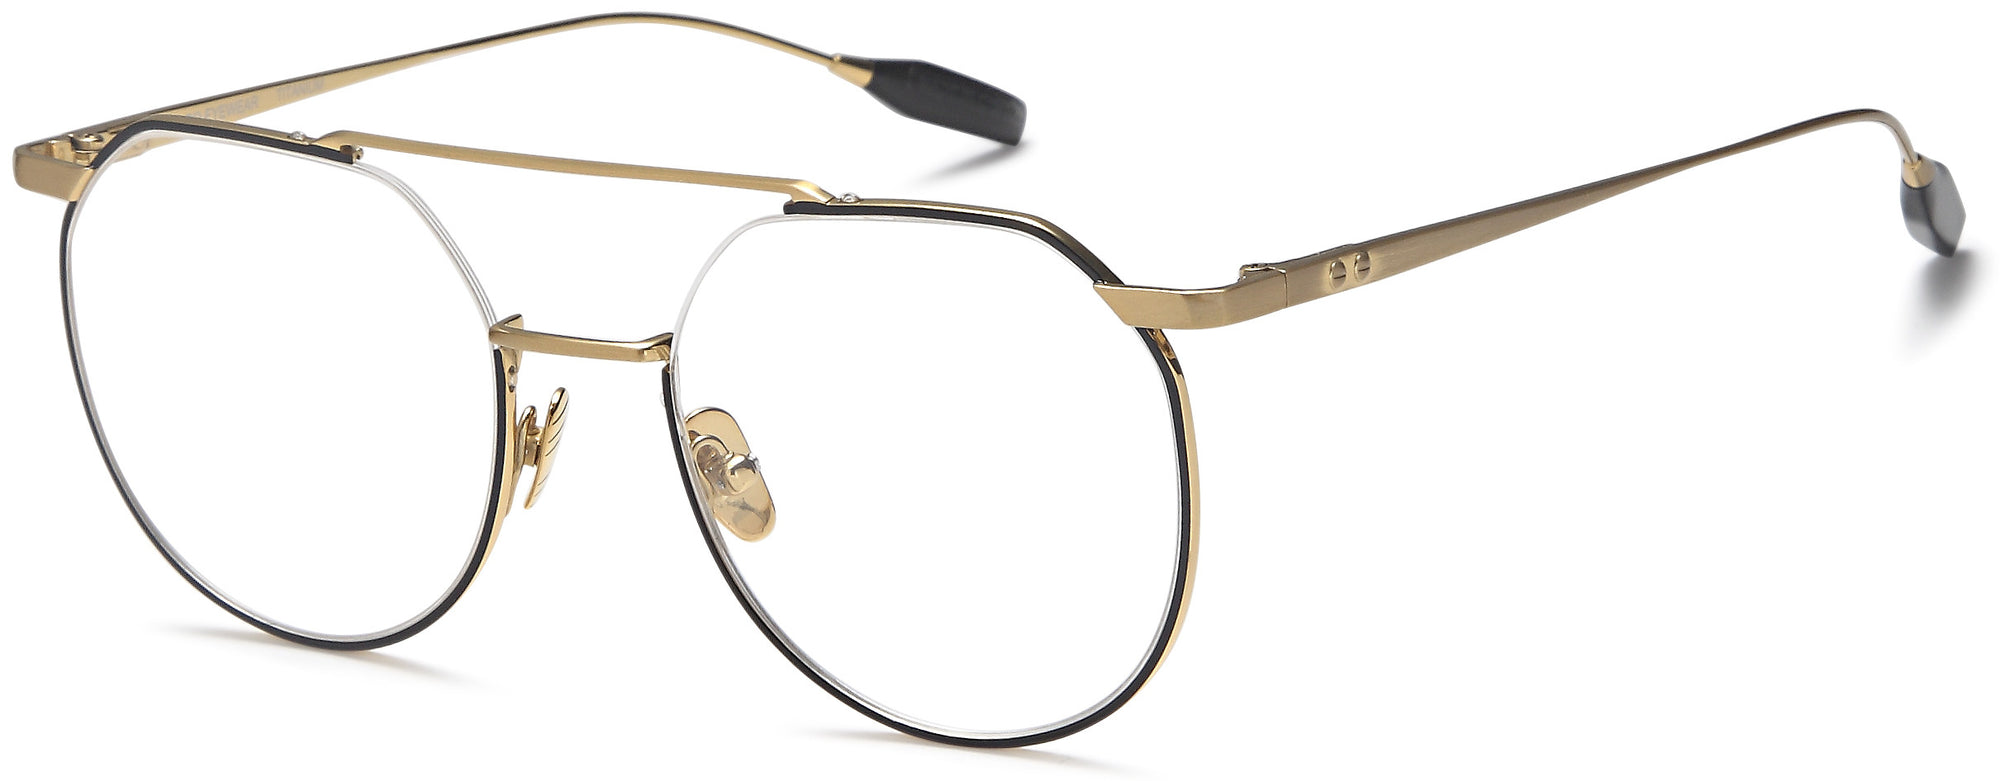 AGO Eyeglasses AGOT700 - Go-Readers.com